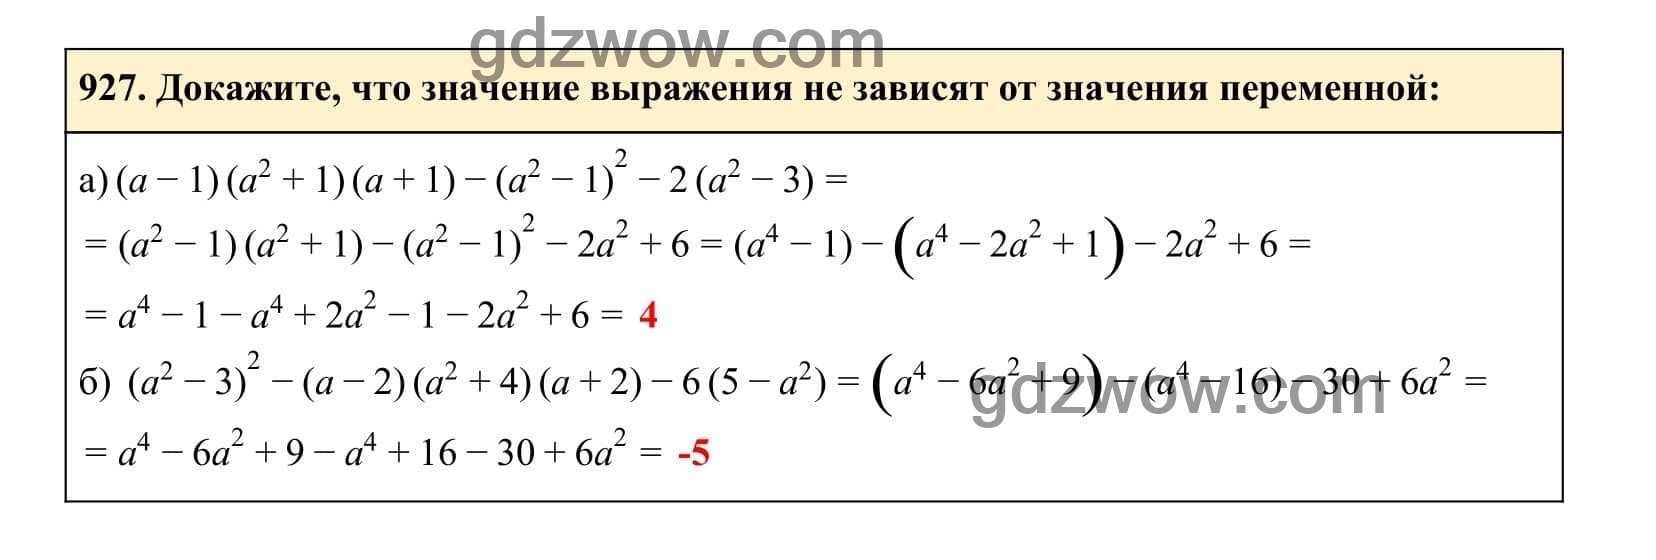 Упражнение 927 - ГДЗ по Алгебре 7 класс Учебник Макарычев (решебник) - GDZwow